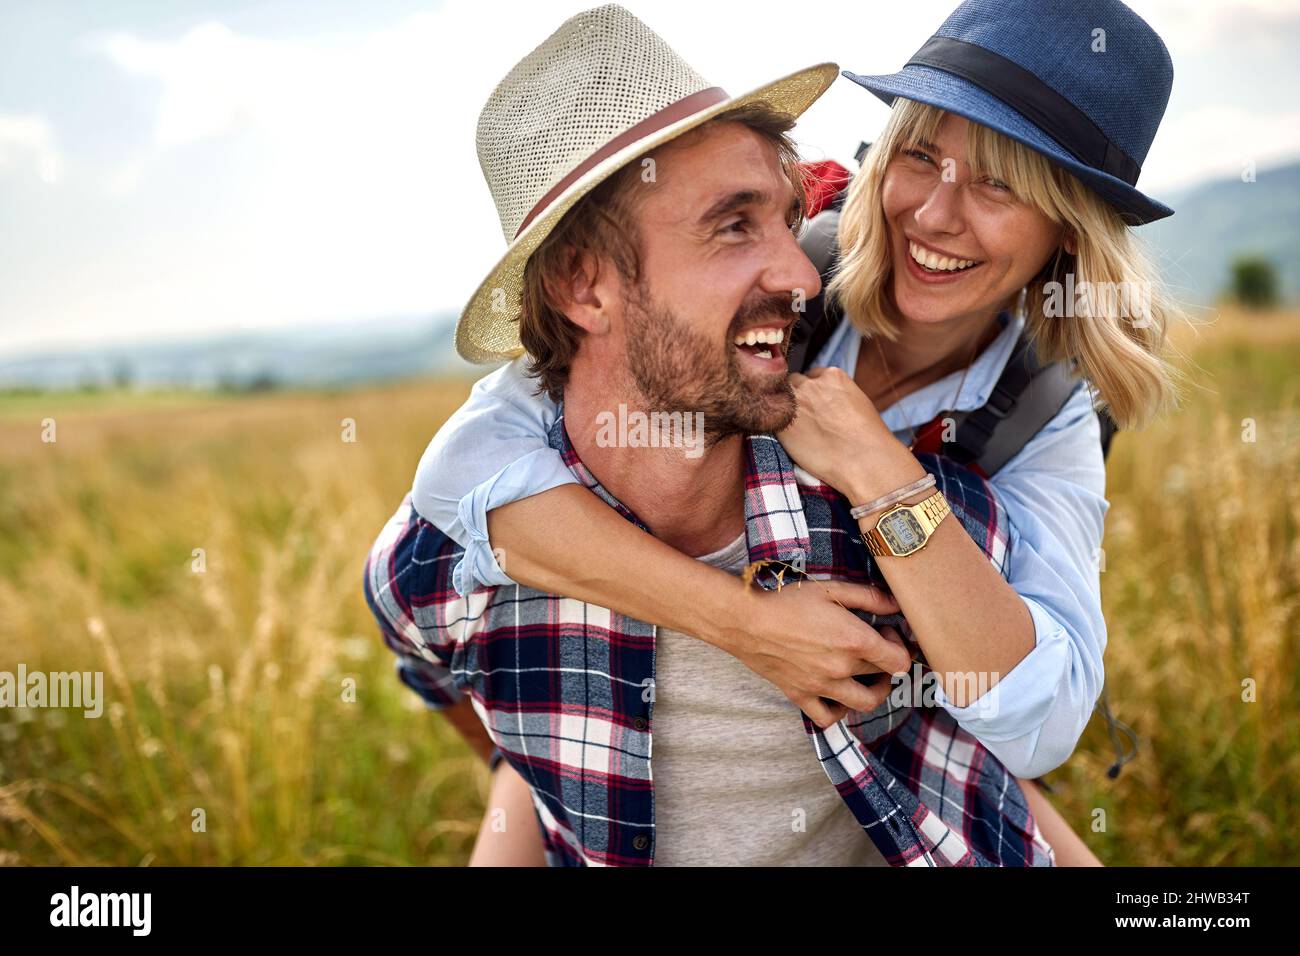 Incontro nella natura. Uomo che porta la sua ragazza sorridente su piggyback. Foto Stock